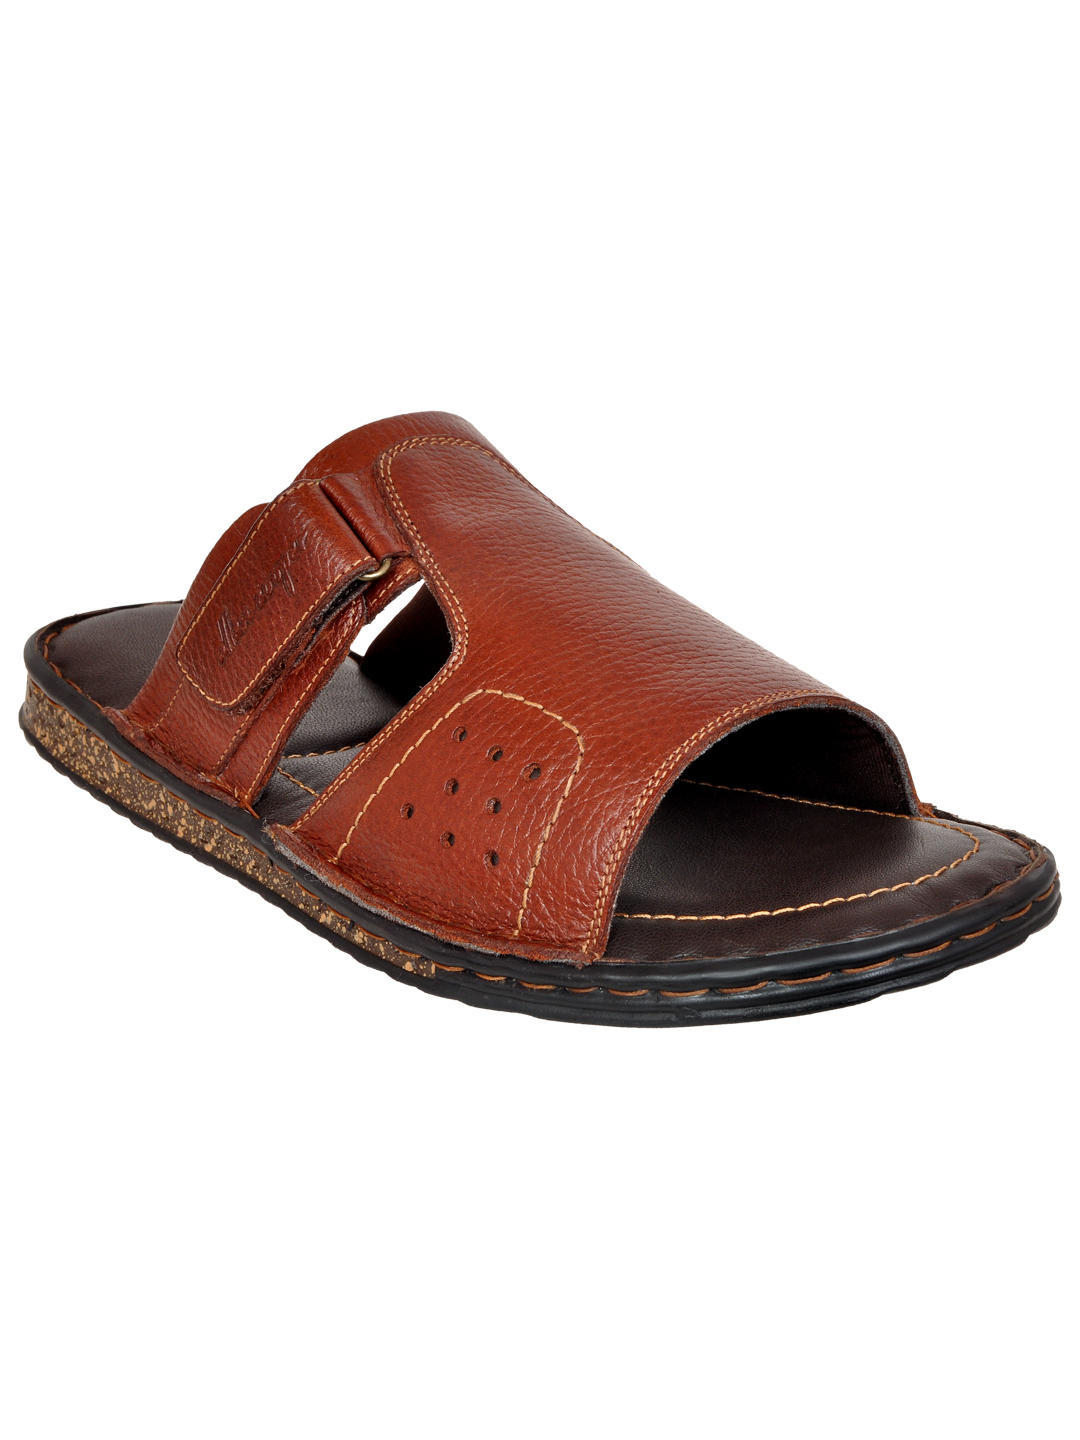 Summer Hiking Sandals Men Genuine Leather Fashion India  Ubuy